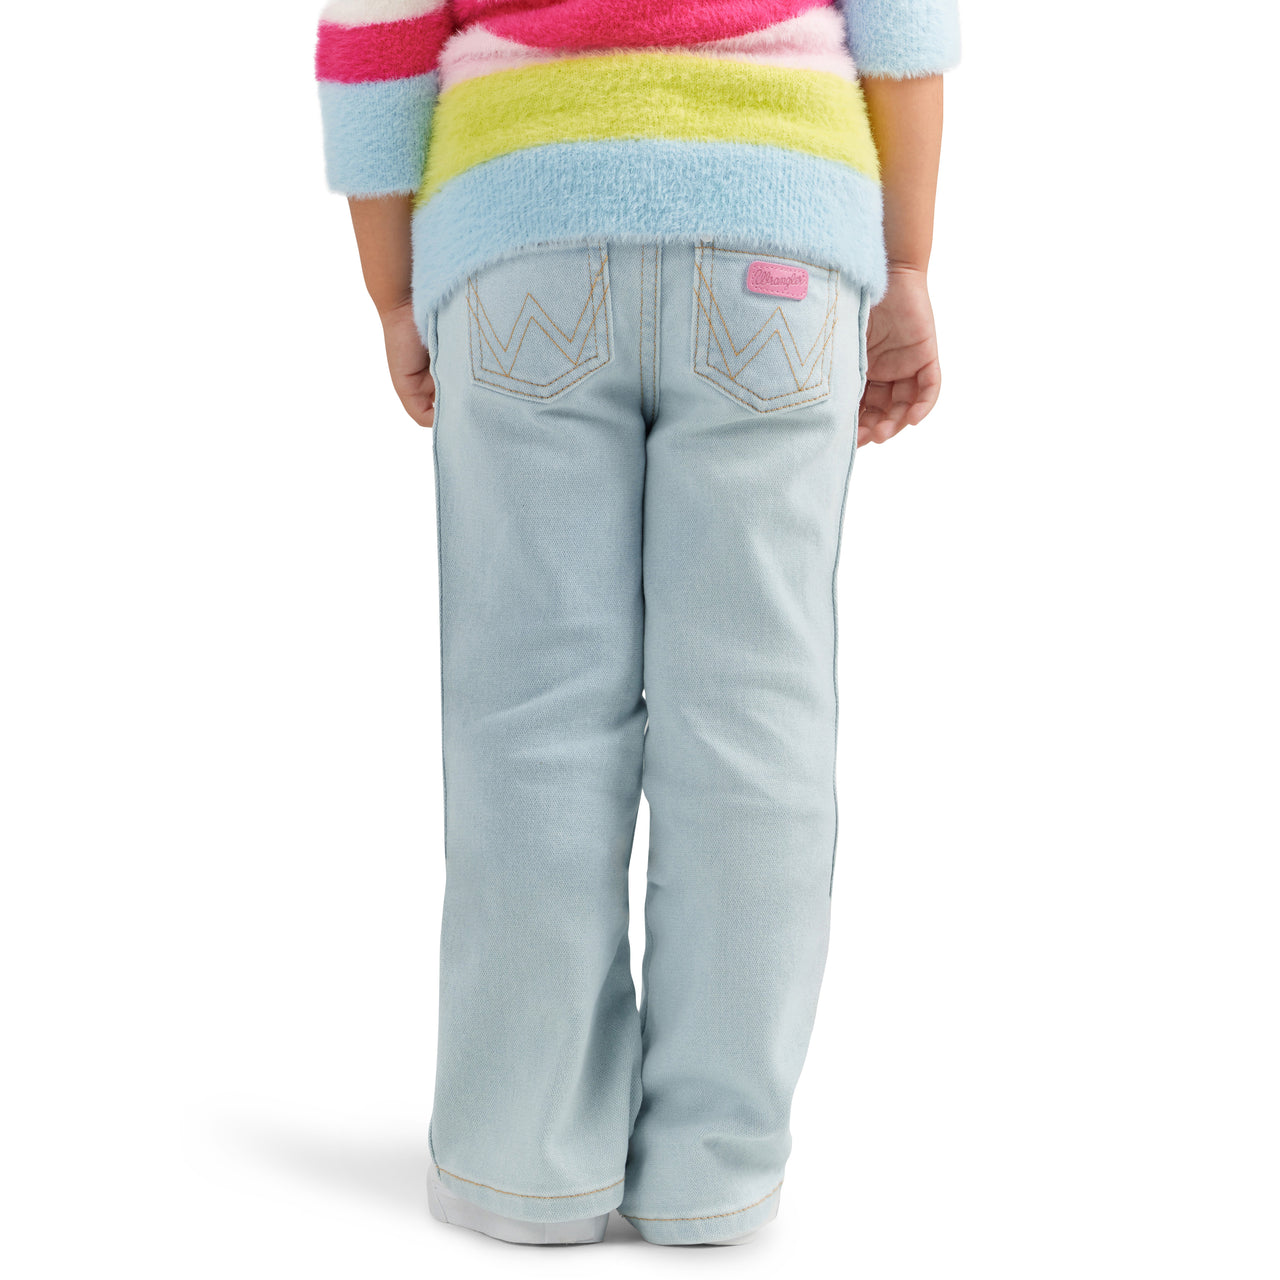 Wrangler X Barbie Girl's Bootcut Jeans - Light Wash